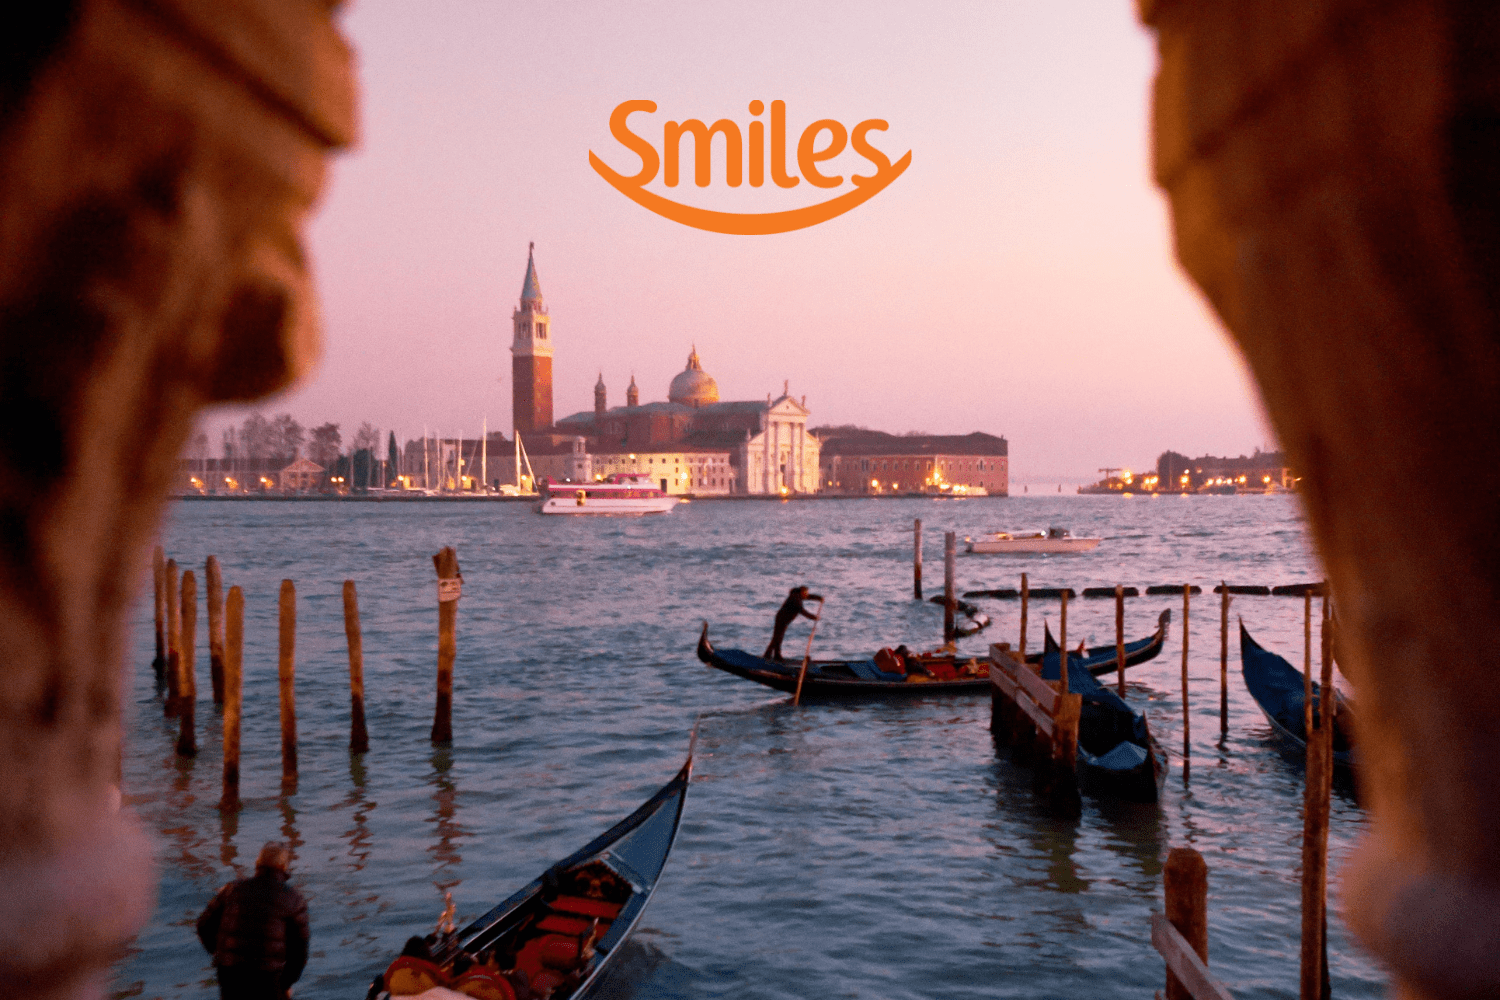 imagem de barcos sobre a água com logo SMiles até 70% de bônus Smiles